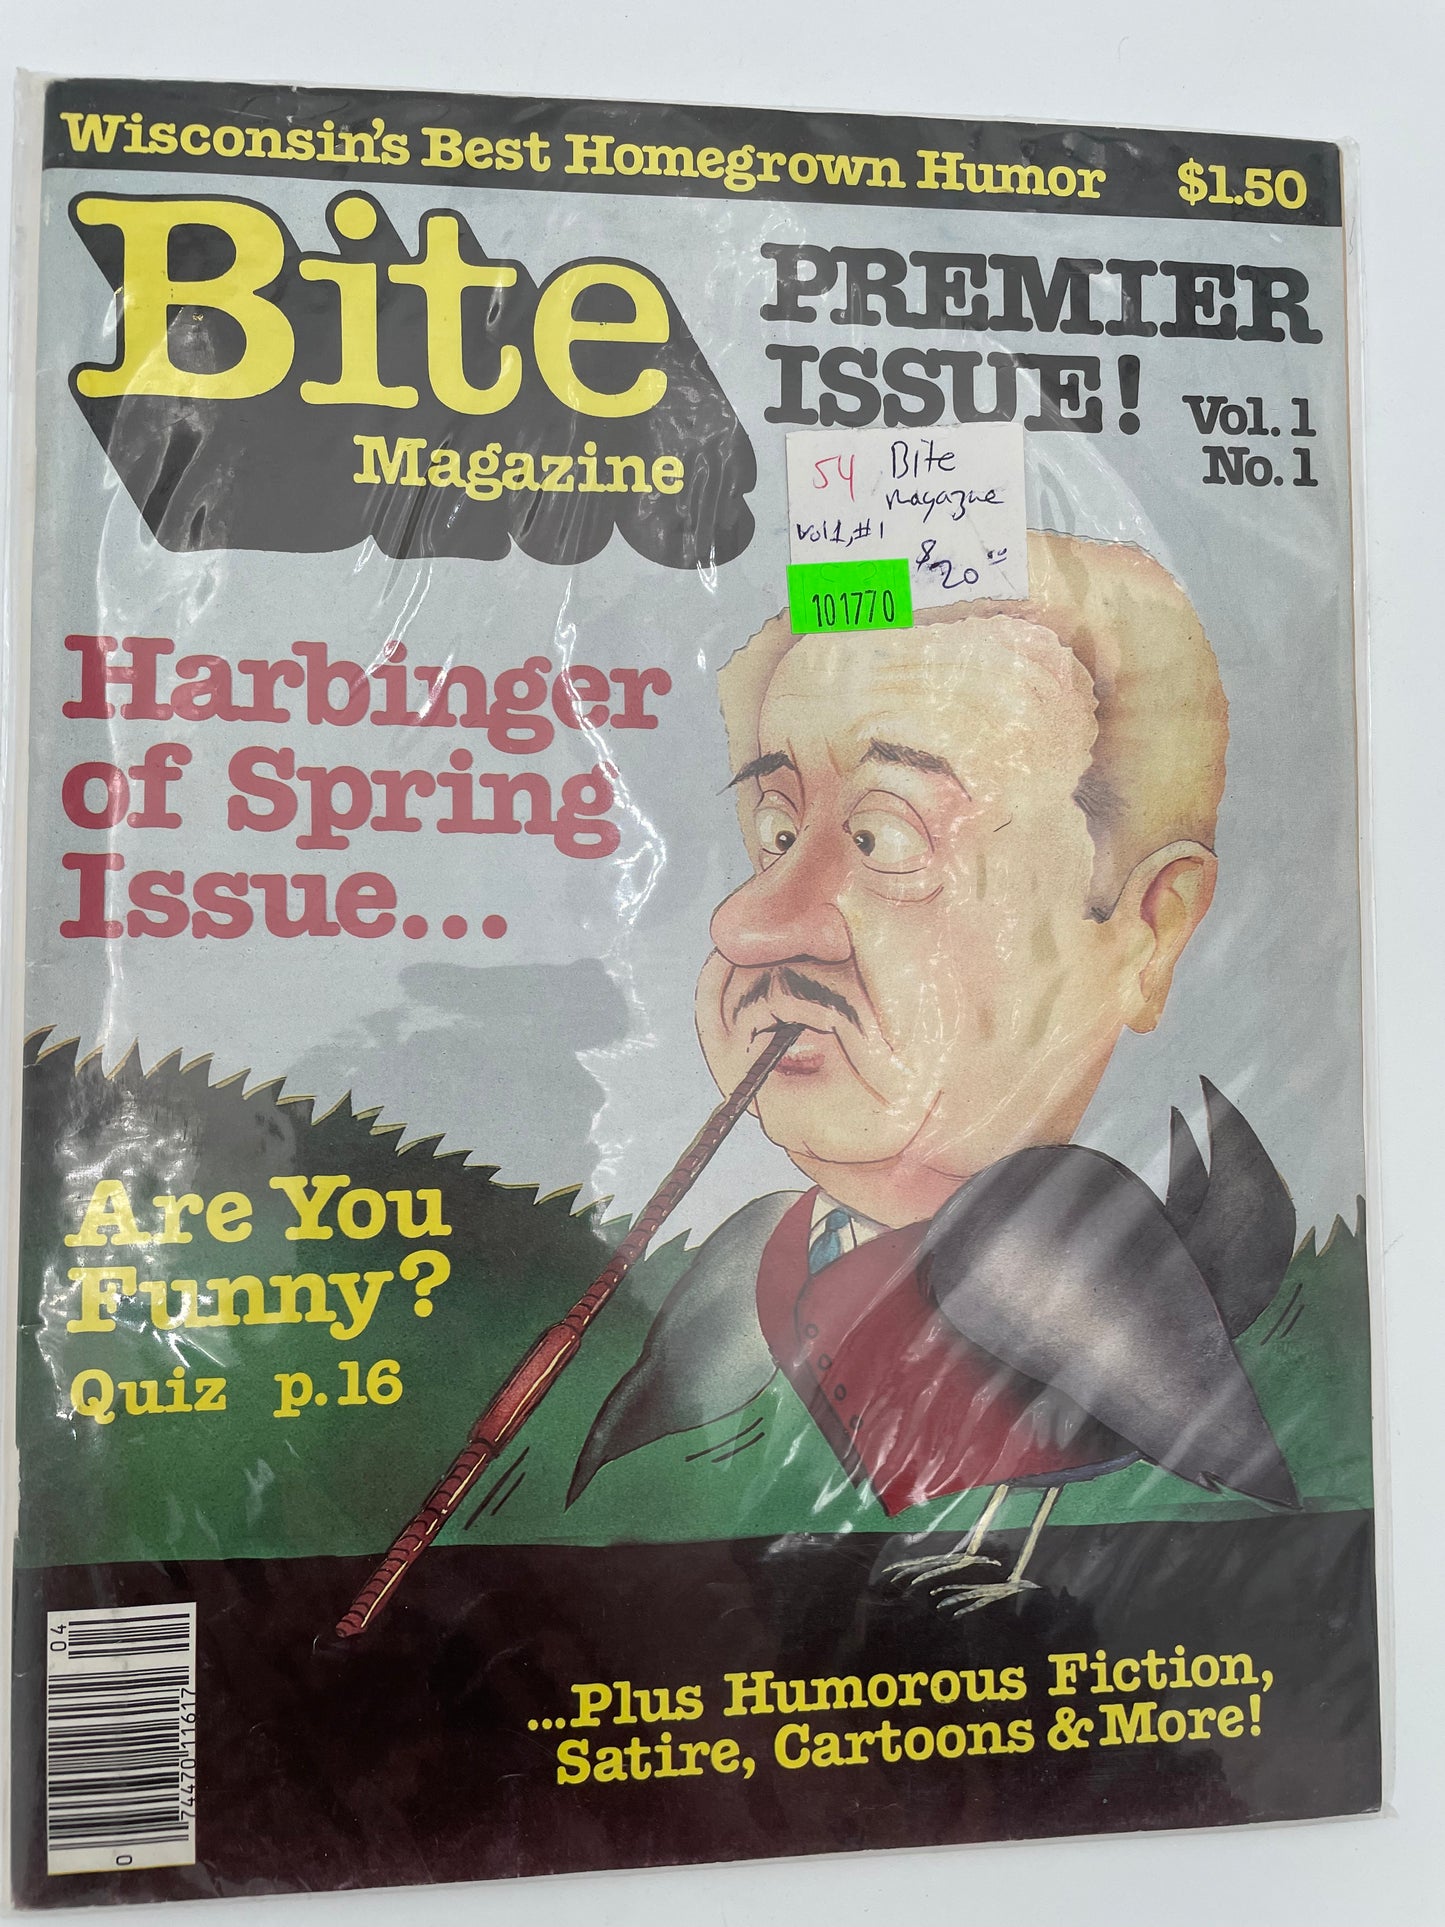 Bite Magazine - Premier Issue - Vol 1 No 1 - #101771